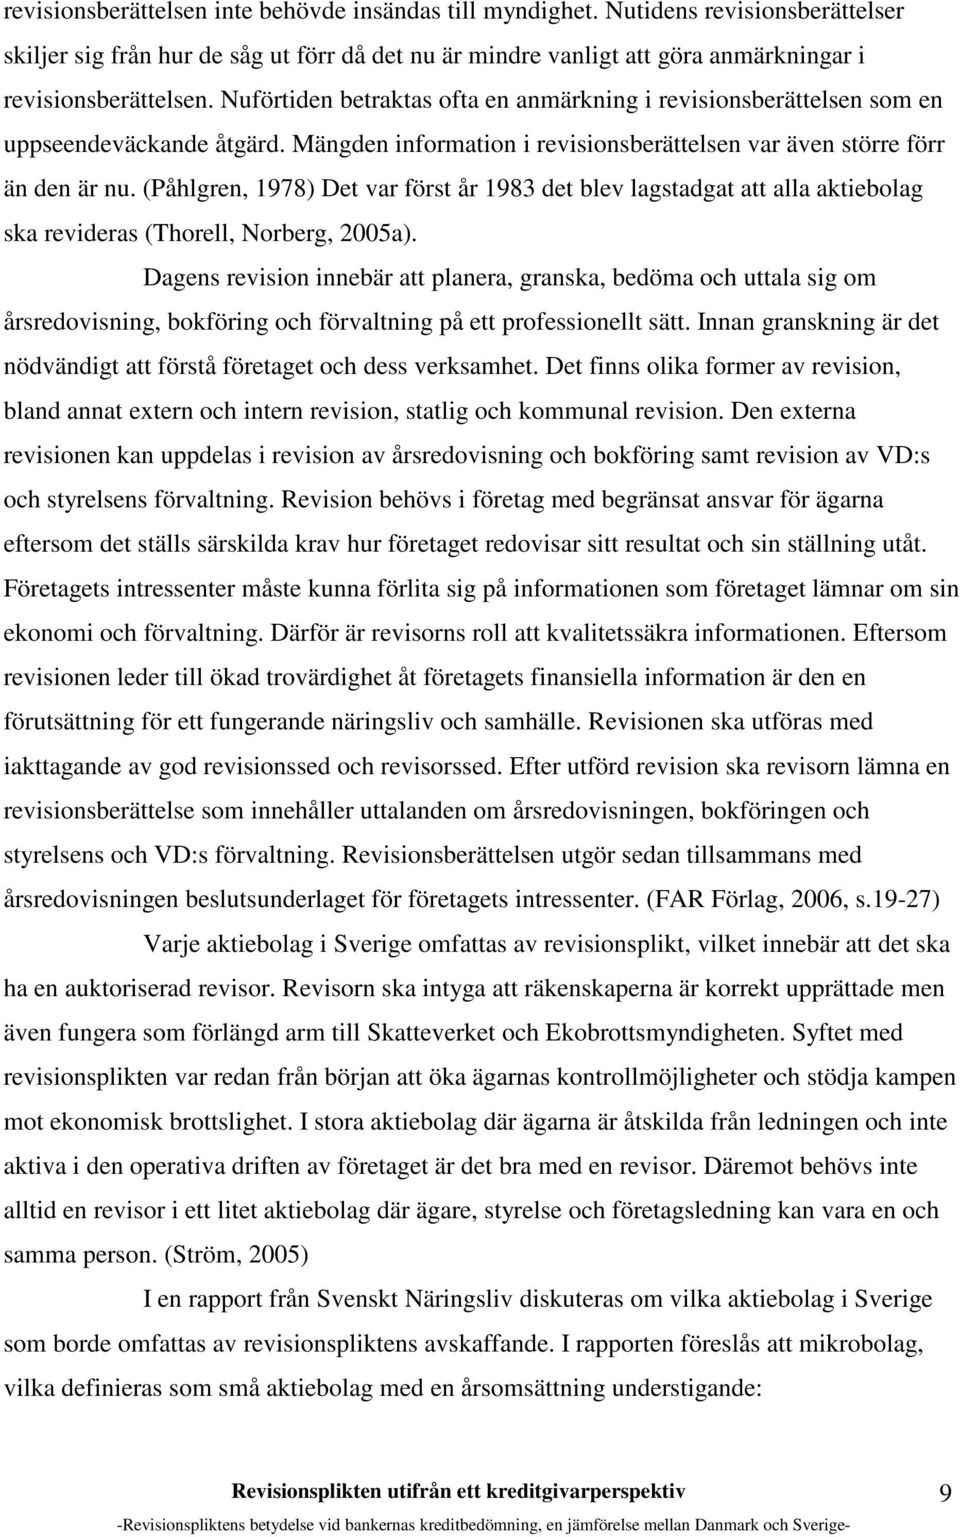 (Påhlgren, 1978) Det var först år 1983 det blev lagstadgat att alla aktiebolag ska revideras (Thorell, Norberg, 2005a).